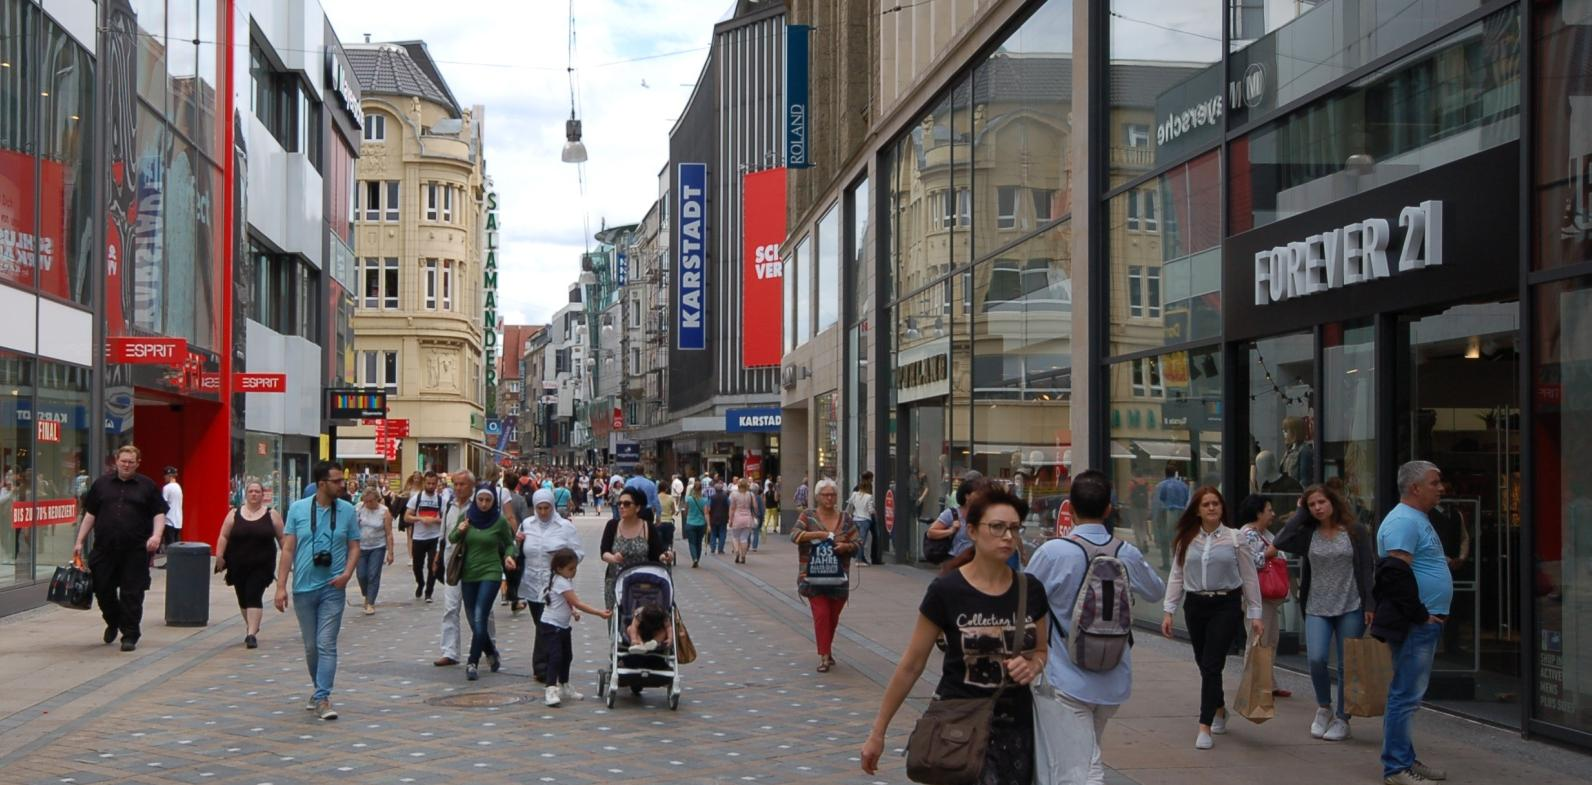 Das riesige Einzugsgebiet der Dortmunder Innenstadt reicht weit ins Westfälische hinein, speziell die Einwohner von benachbarten Städten wie Lünen, Werne, Kamen, Bergkamen, Unna und Schwerte zieht es